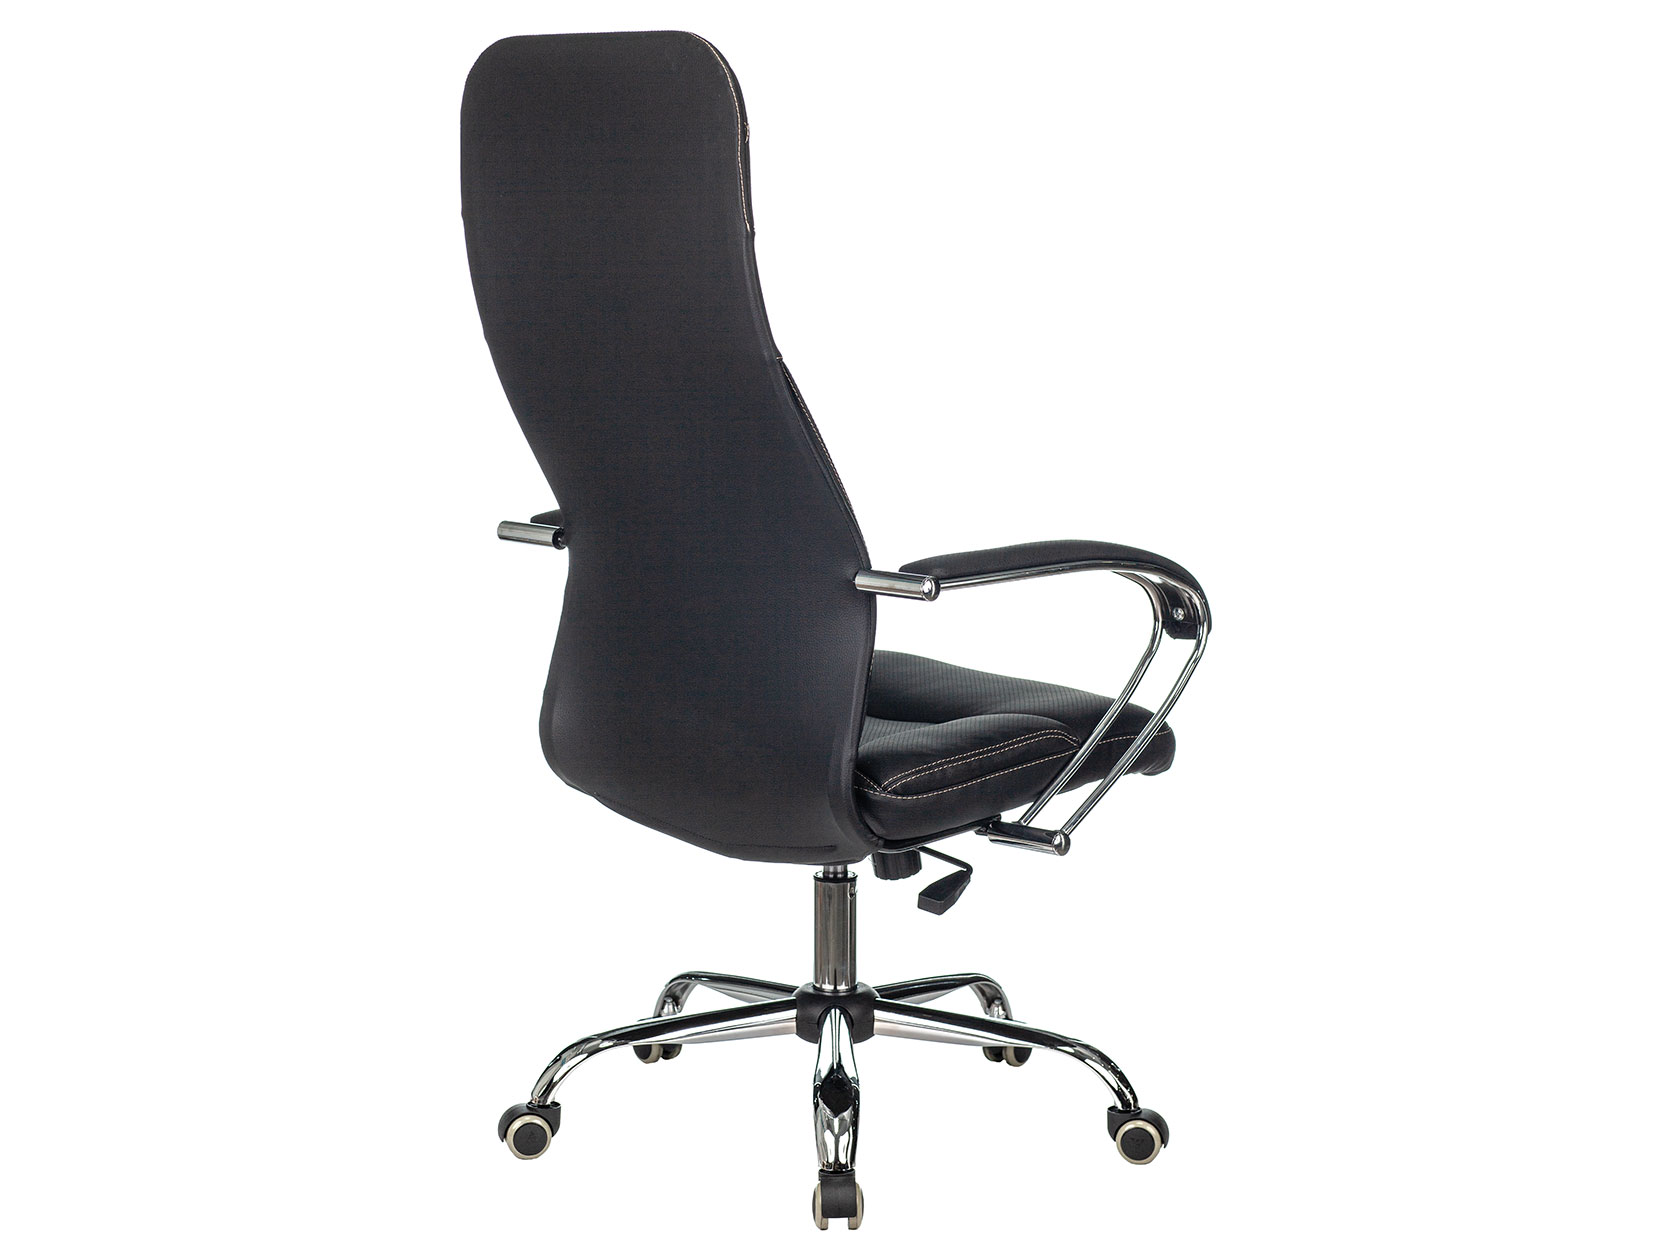 Кресло офисное Brabix Premium 